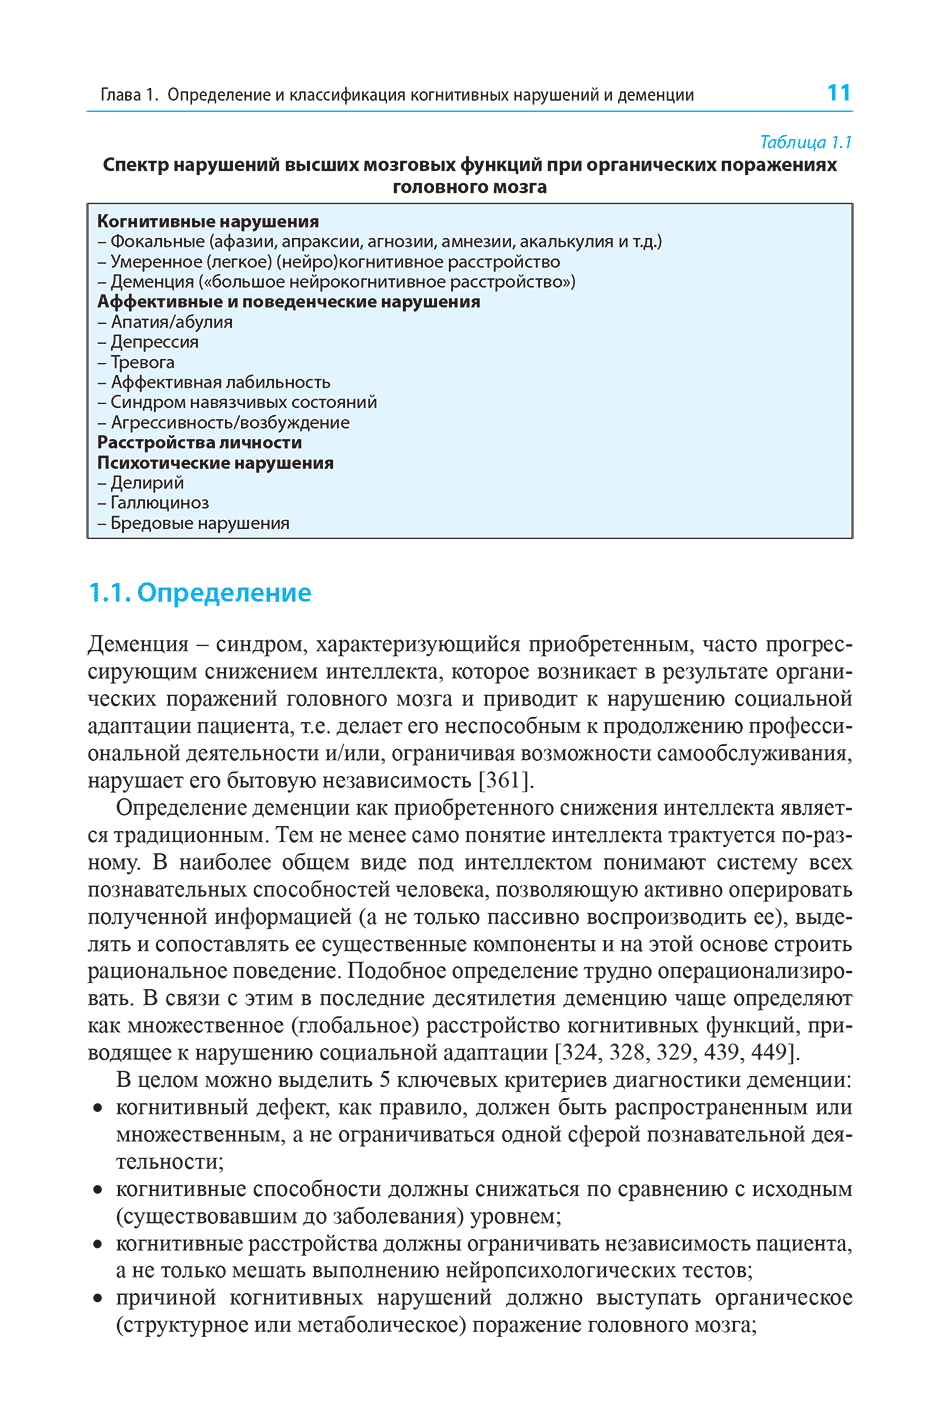 Пример страницы из книги "Диагностика и лечение когнитивных нарушений и деменции в клинической практике" - Левин О. С.